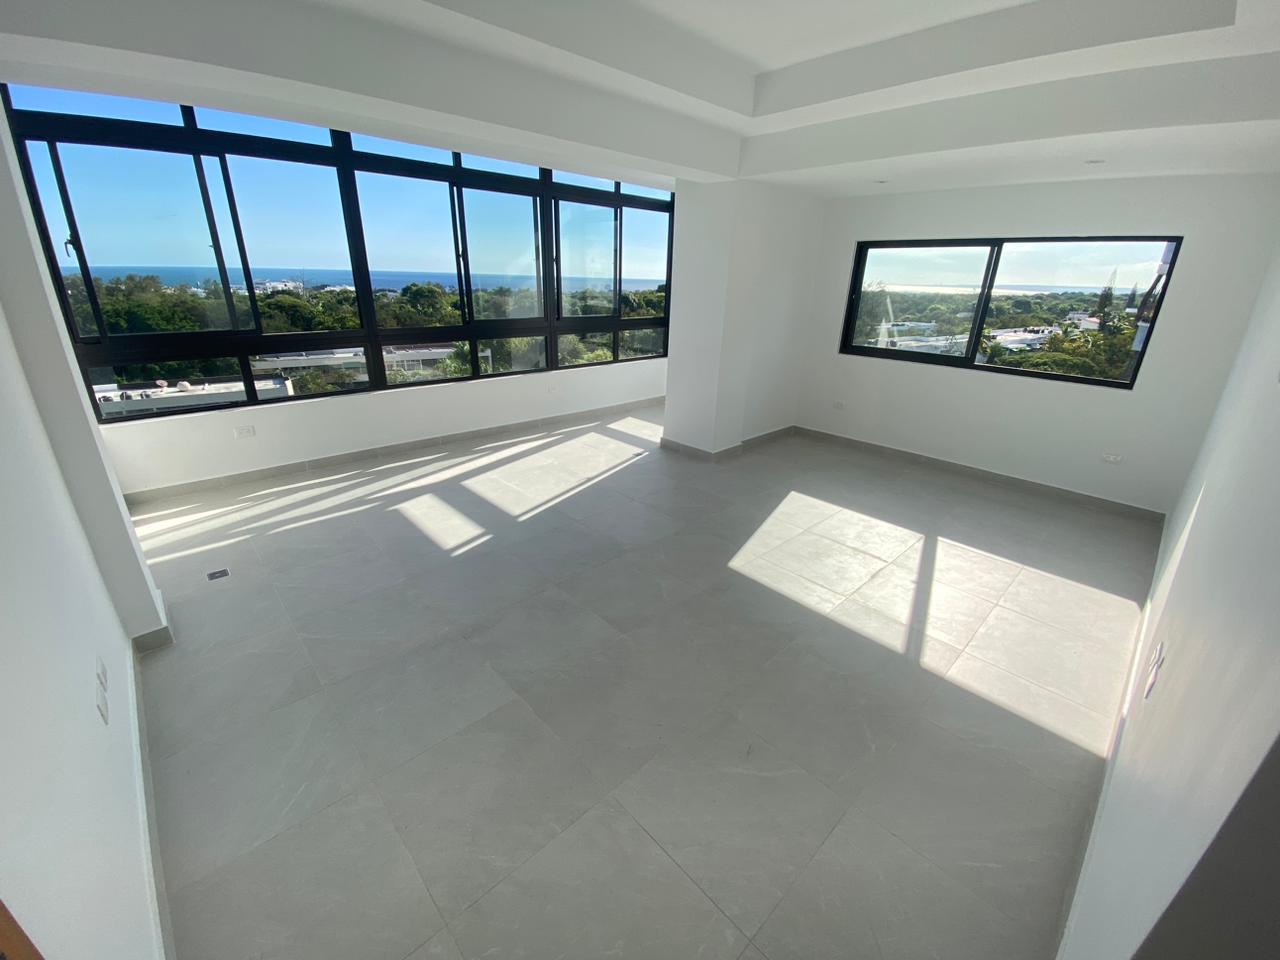 penthouses - Vendo Ph nuevo mirador sur tres hab con su baño tres parqueos terraza piso 7y8